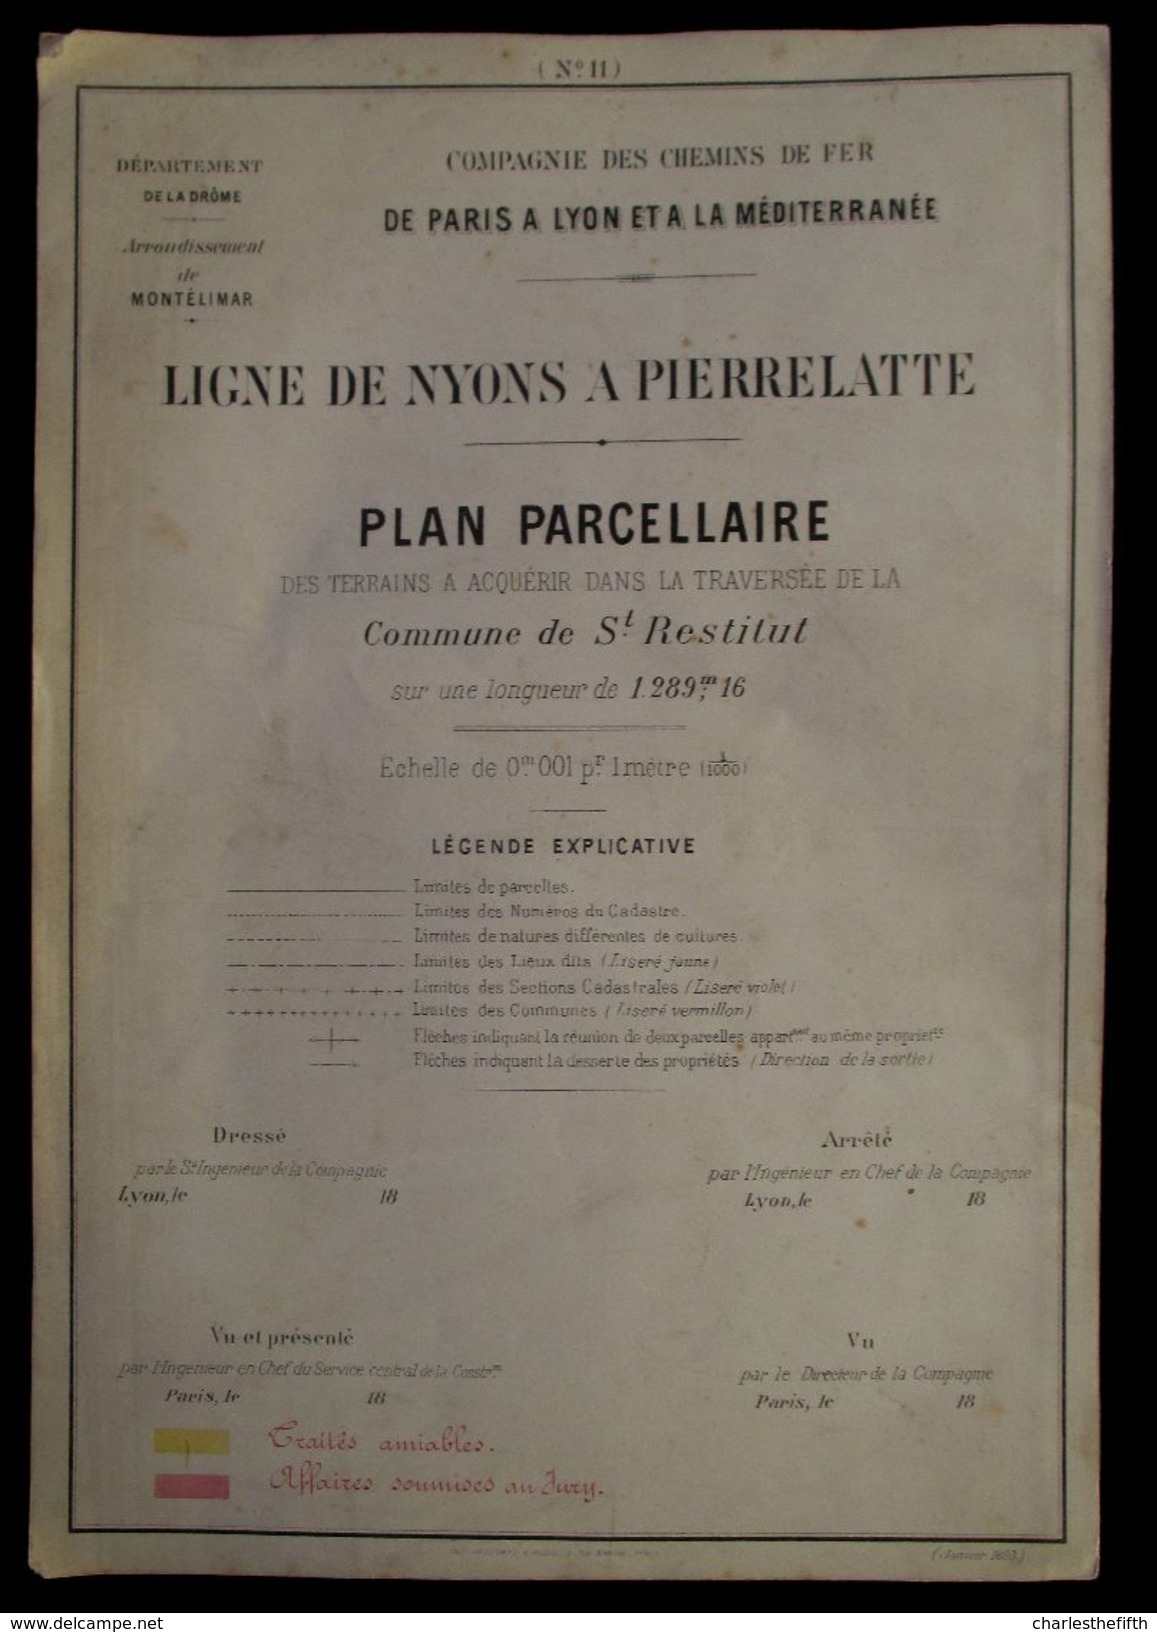 1897 PLAN PARCELLAIRE  CHEMIN DE FER > PARIS A LYON > MEDITERRANEE  COMMUNE DE St - RESTITUT ( St - Paul 3 Chateaux ) - Documents Historiques